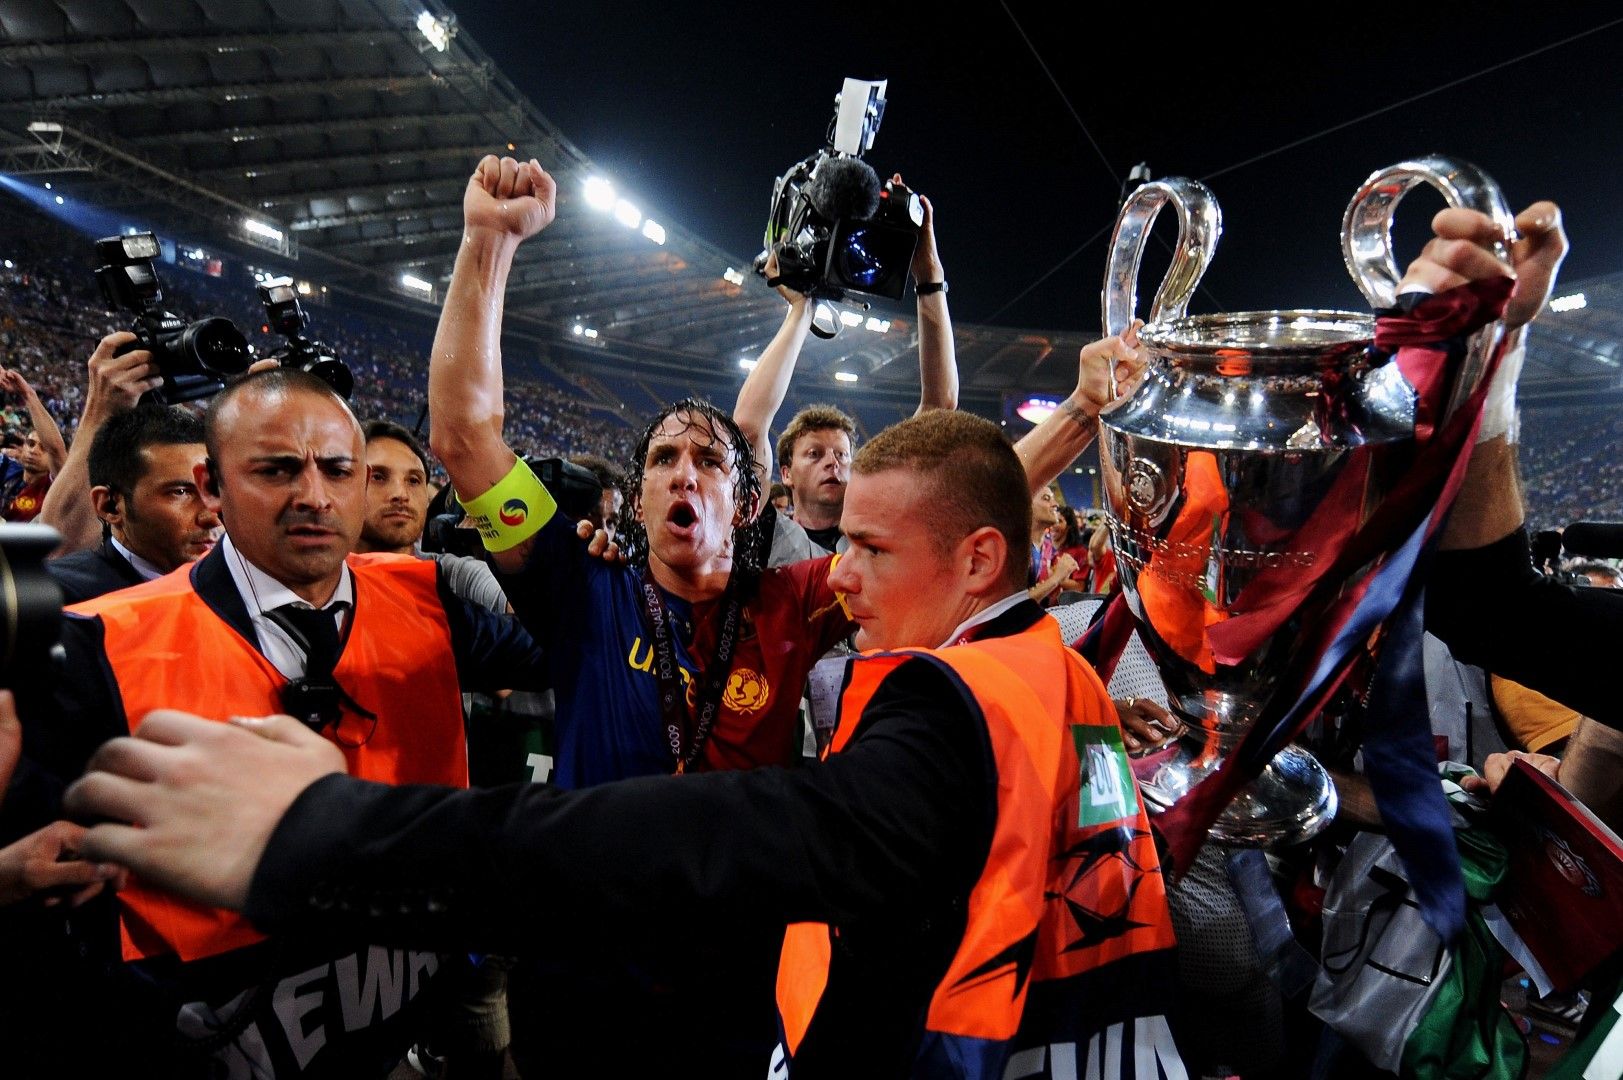 2009 г., Финал в Шампионската лига. След 2:0 трофеят е за каталунците